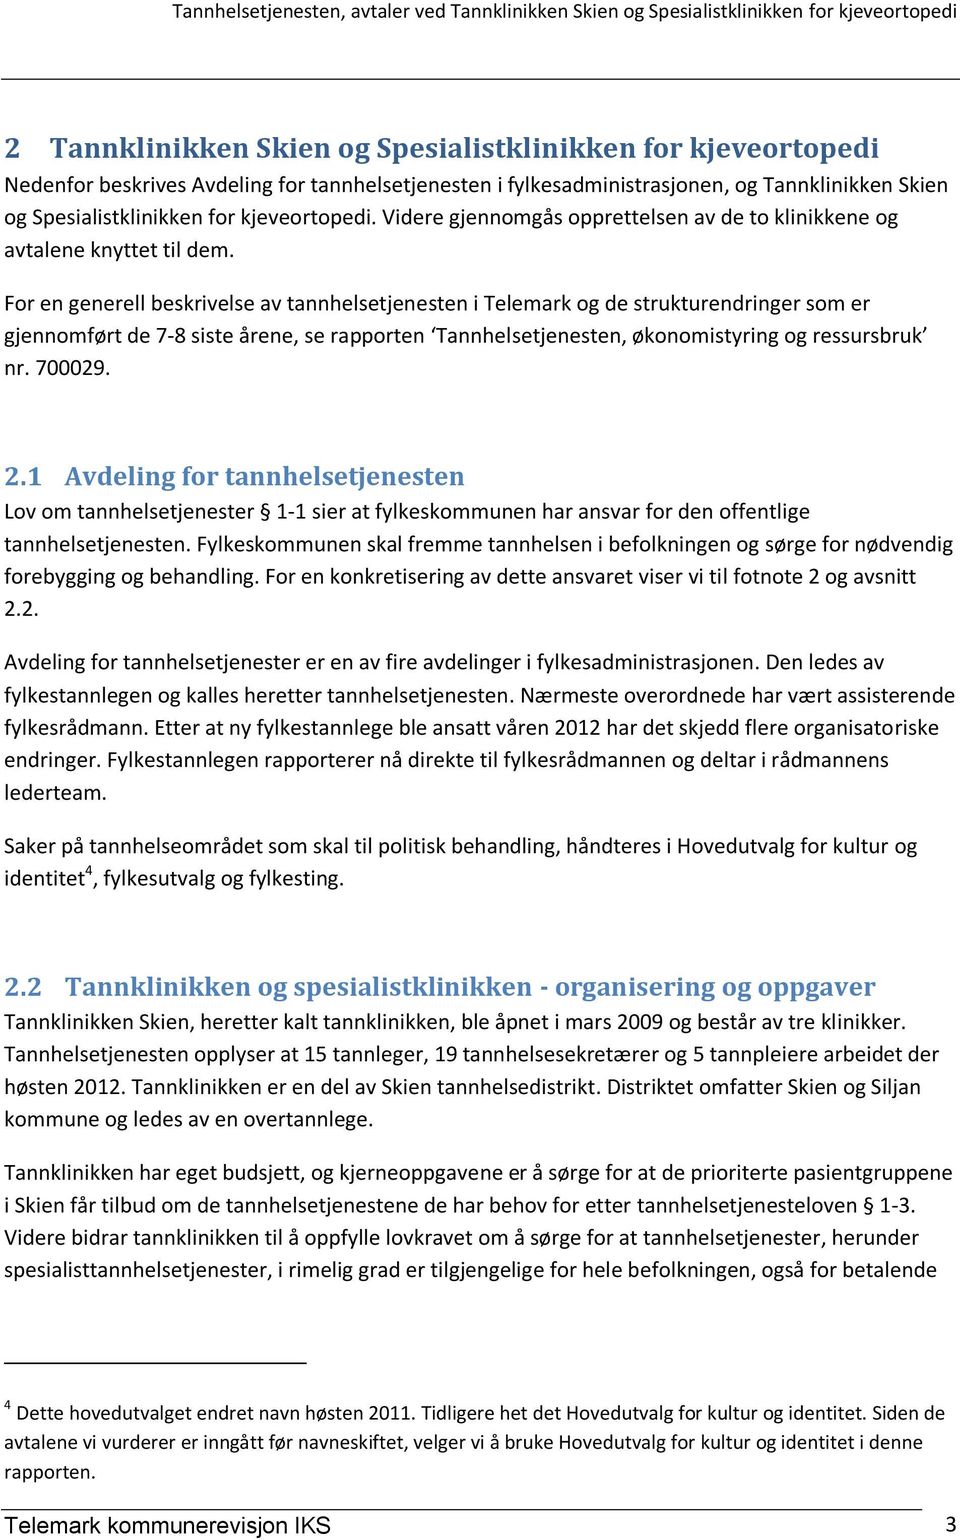 For en generell beskrivelse av tannhelsetjenesten i Telemark og de strukturendringer som er gjennomført de 7-8 siste årene, se rapporten Tannhelsetjenesten, økonomistyring og ressursbruk nr. 700029.